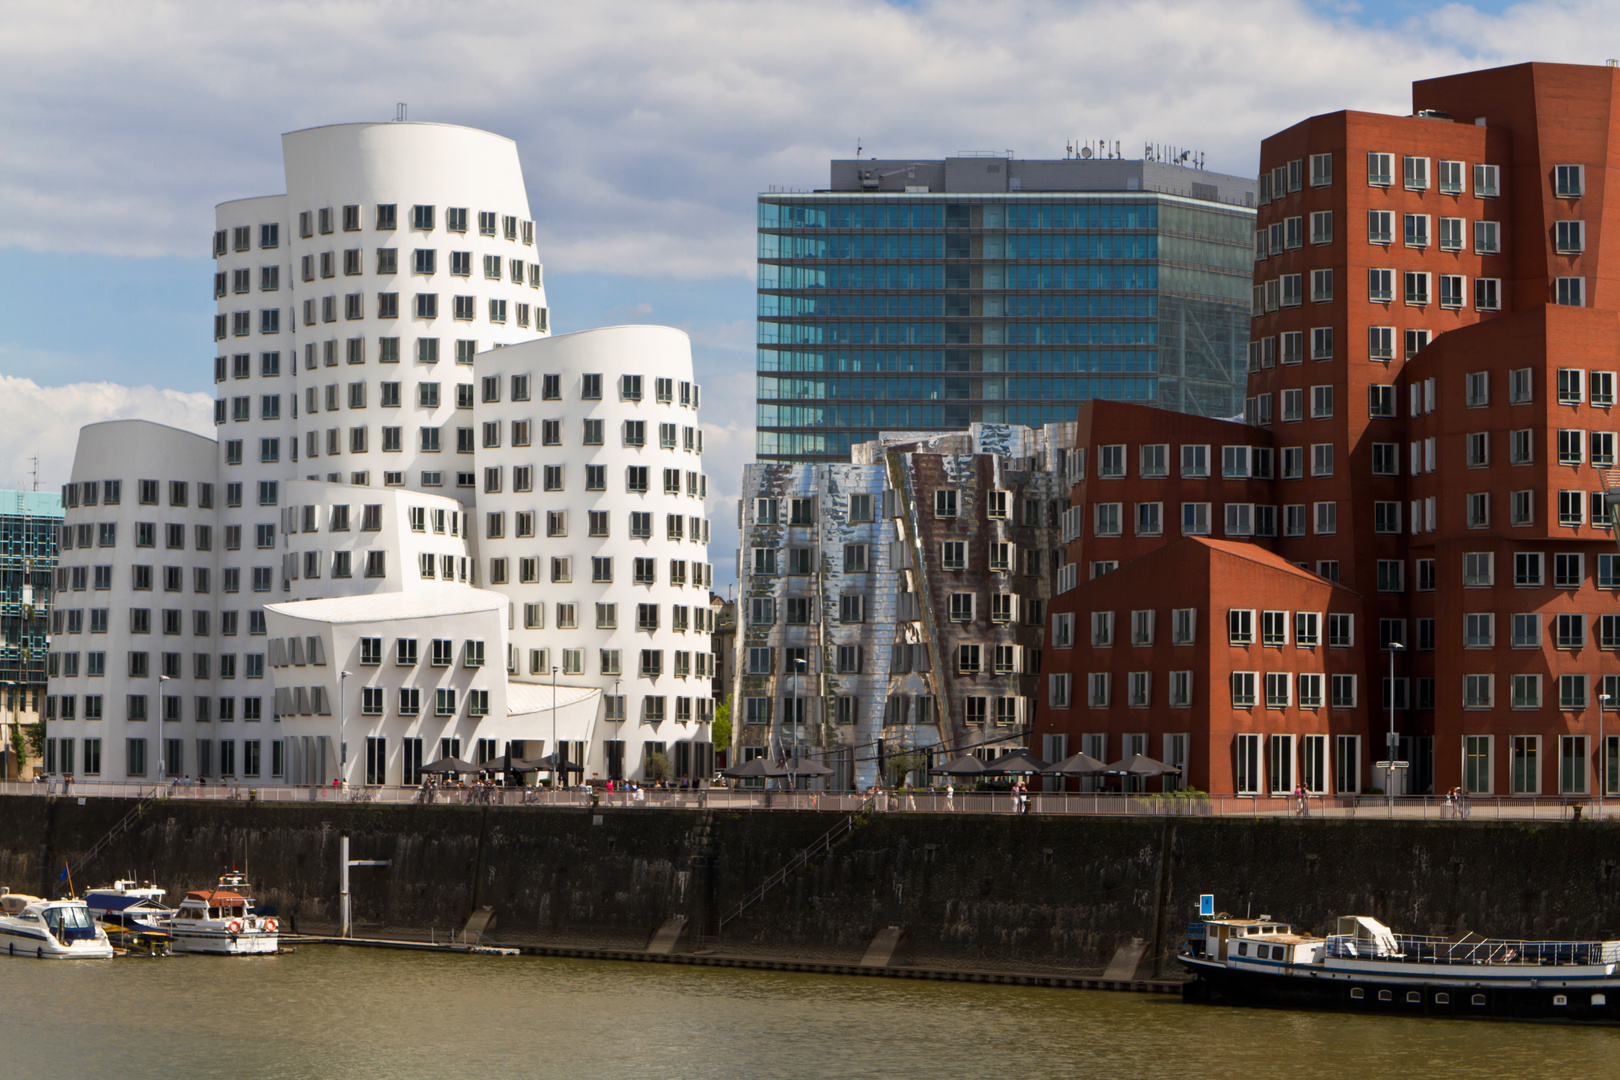 Düsseldorfer Medienhafen